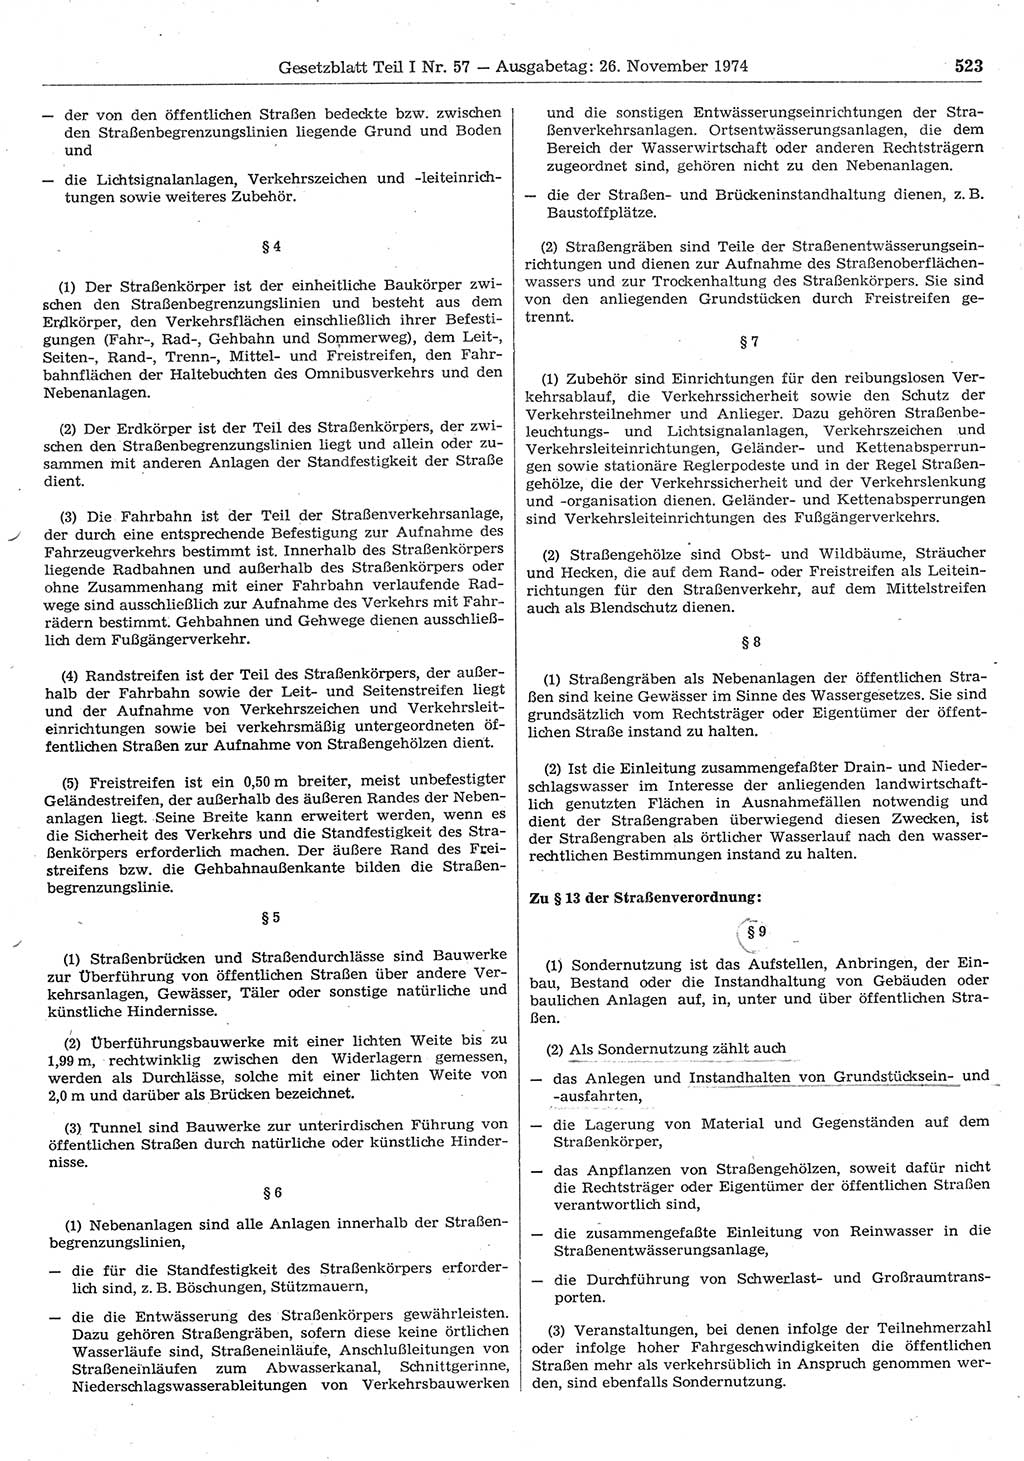 Gesetzblatt (GBl.) der Deutschen Demokratischen Republik (DDR) Teil Ⅰ 1974, Seite 523 (GBl. DDR Ⅰ 1974, S. 523)